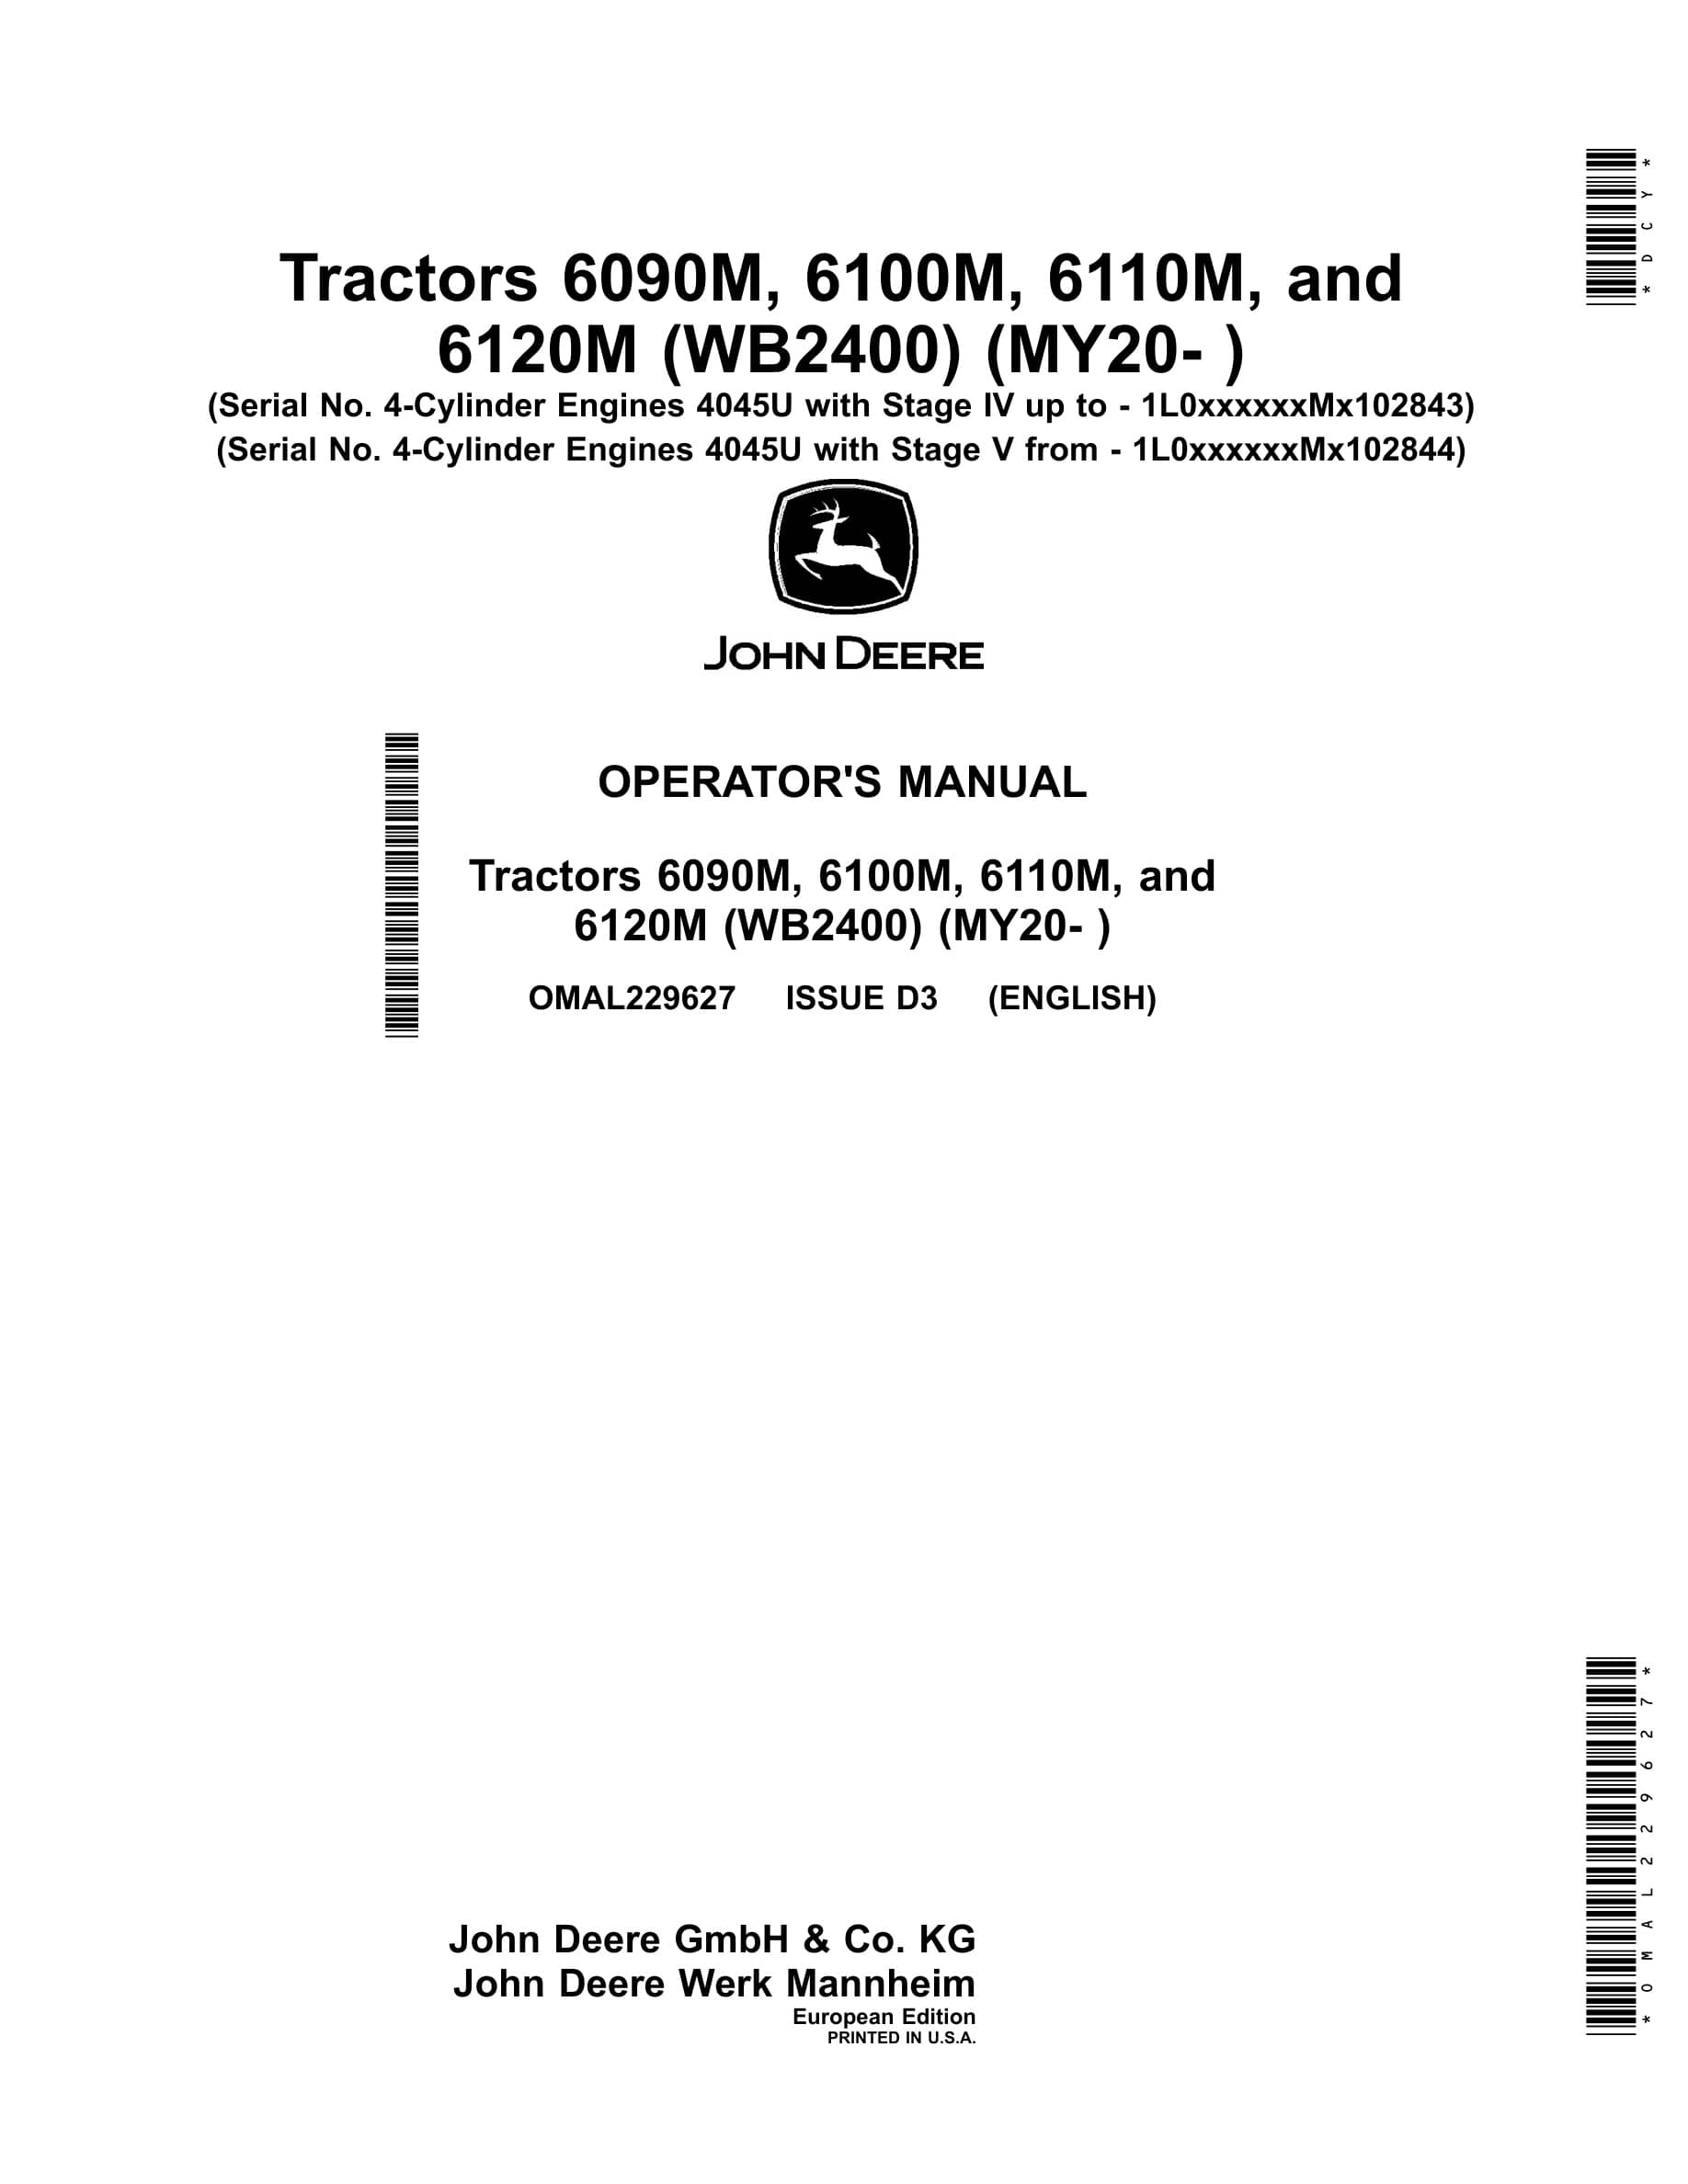 John Deere 6090m, 6100m, 6110m, And 6120m Tractors Operator Manuals OMAL229627-1